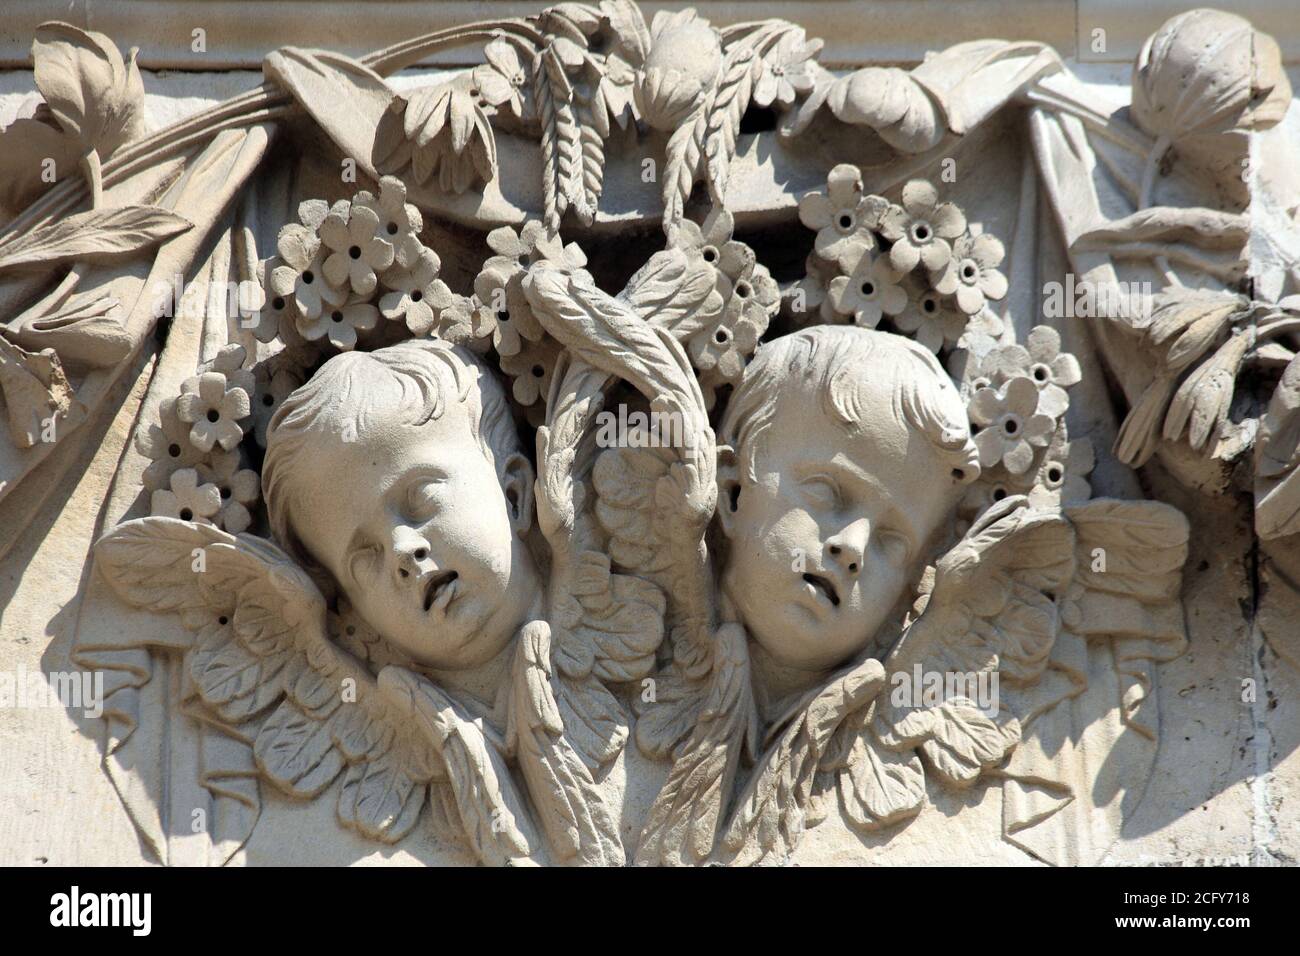 Angelo cherubino decorazione scultura all'esterno di San Paolo Cattedrale di Londra Inghilterra Regno Unito, un viaggio popolare destinazione attrazione turistica Foto Stock